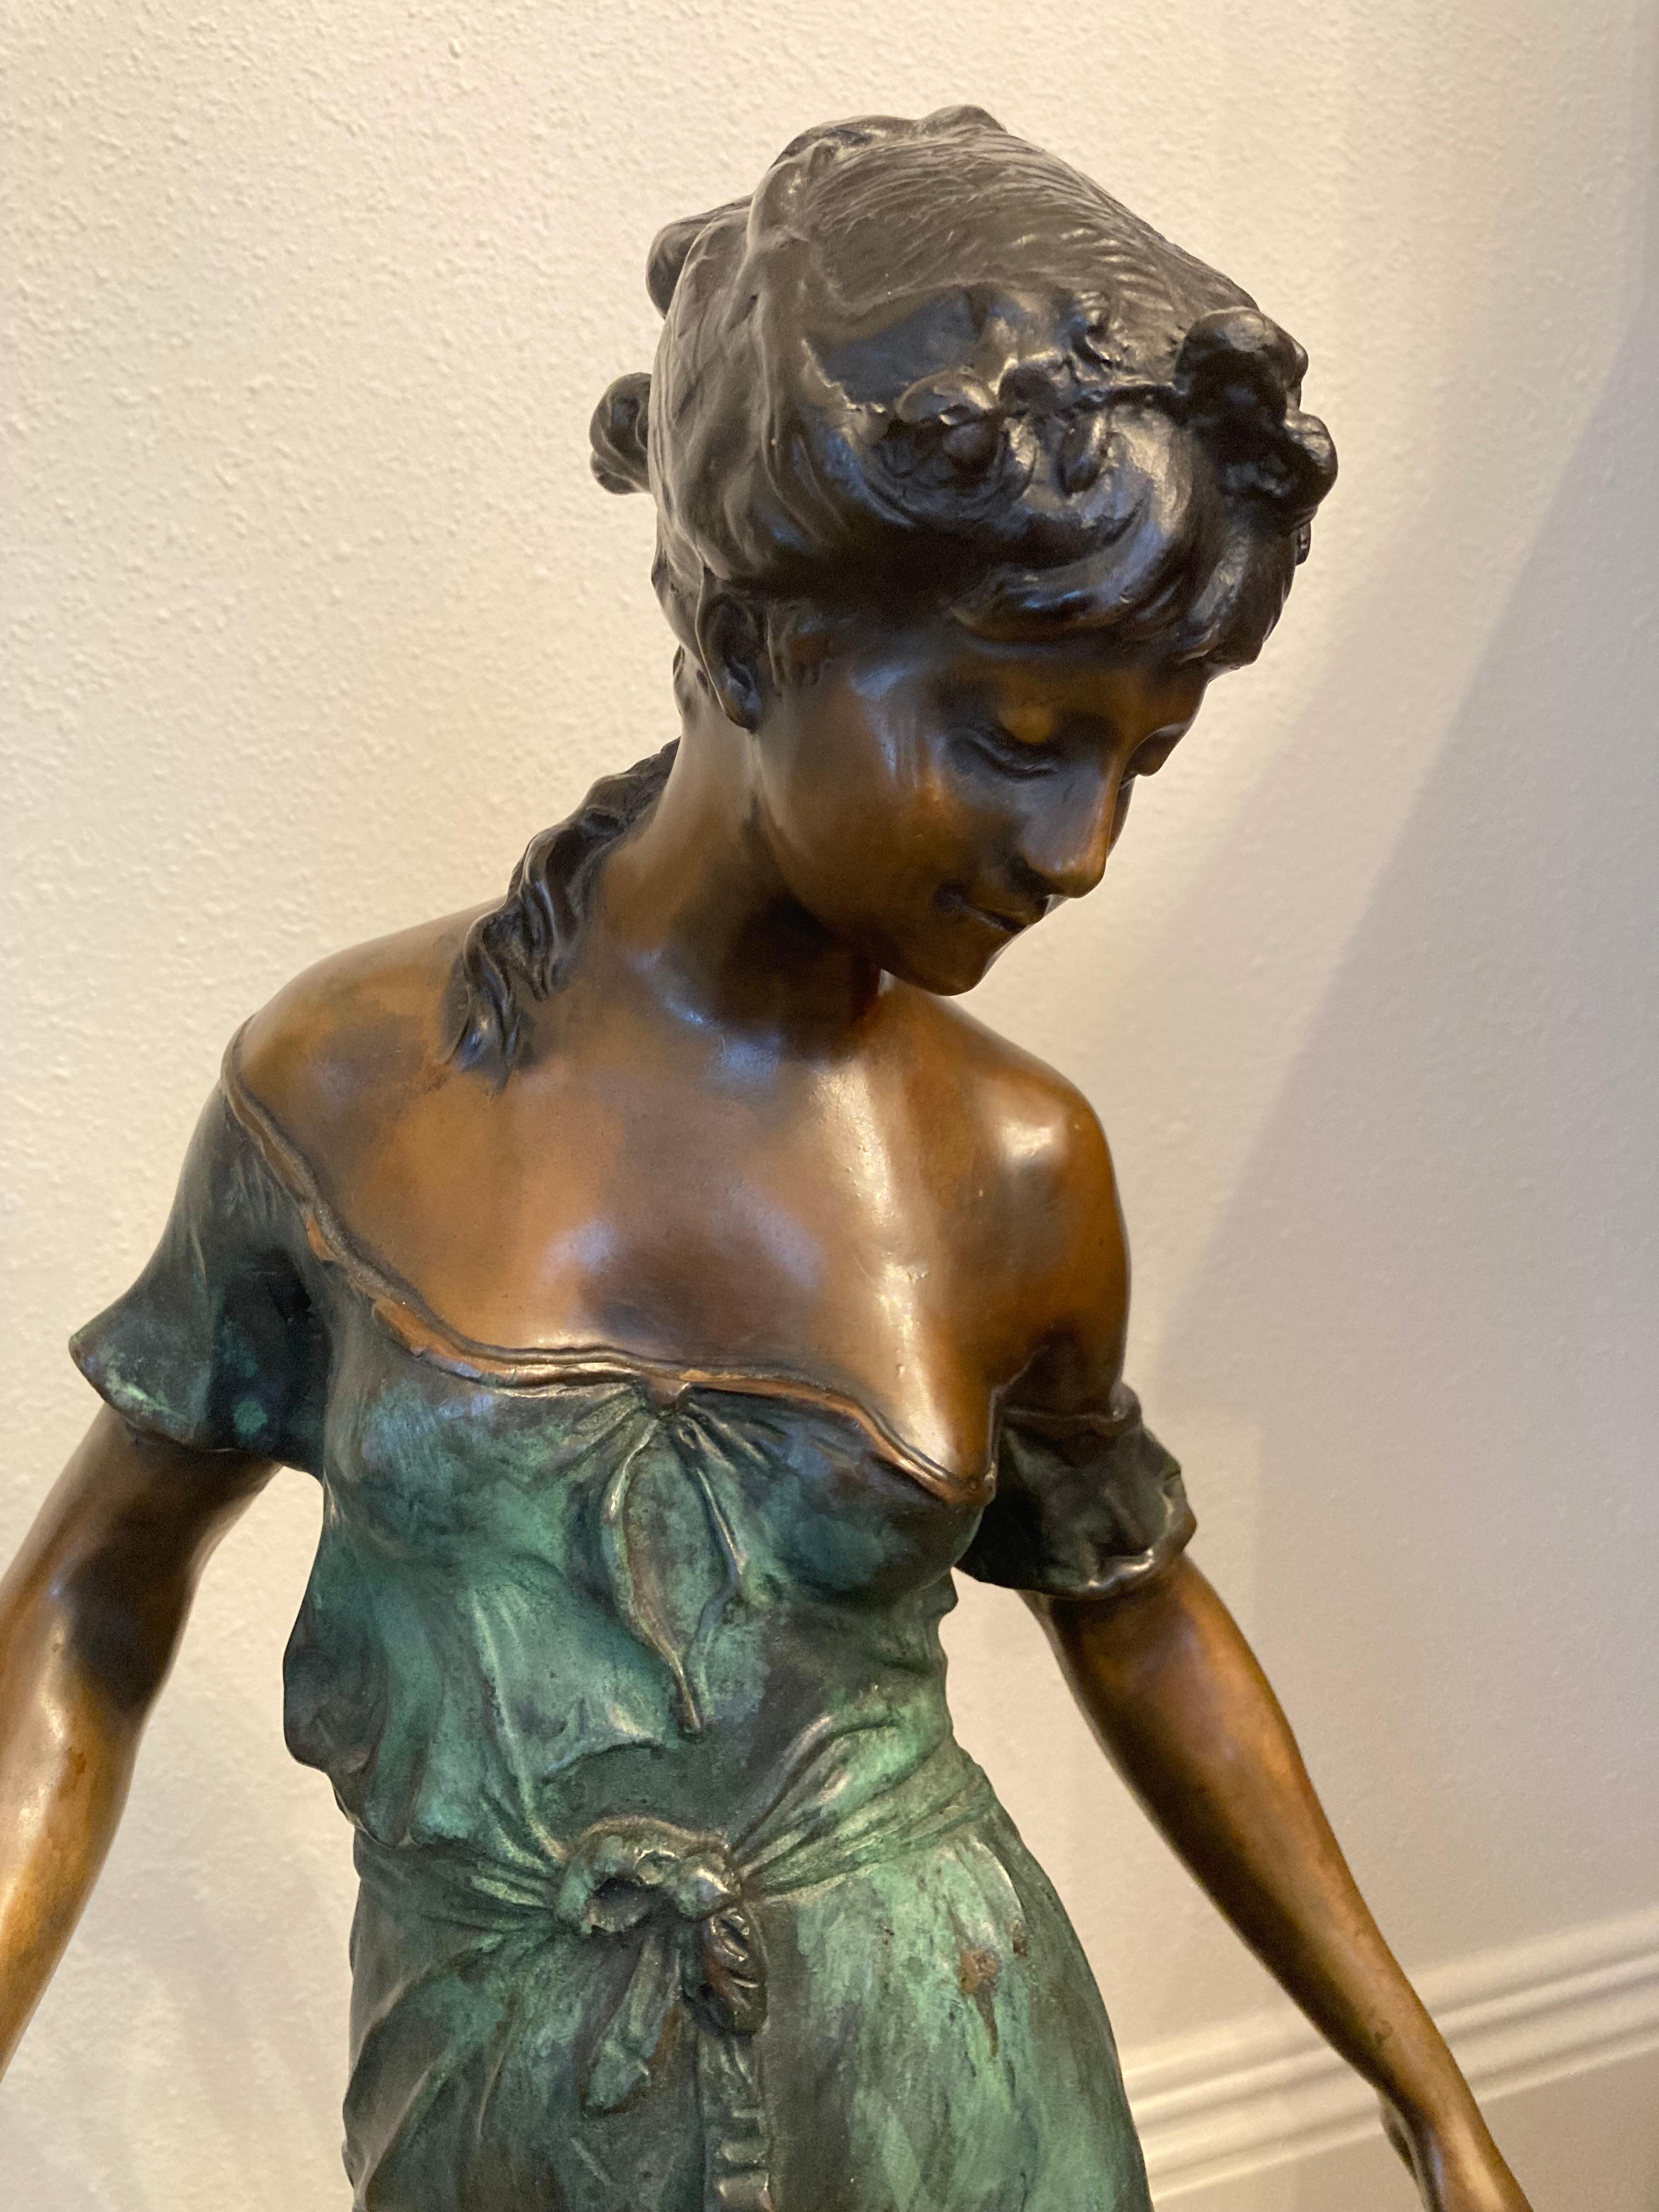 Un bronze exquis du sculpteur français Auguste Moreau, un artiste très apprécié qui a régulièrement participé aux salons de Paris au début du XXe siècle. Il a souvent représenté des chérubins, mais ses bronzes les plus prisés sont ceux de charmantes